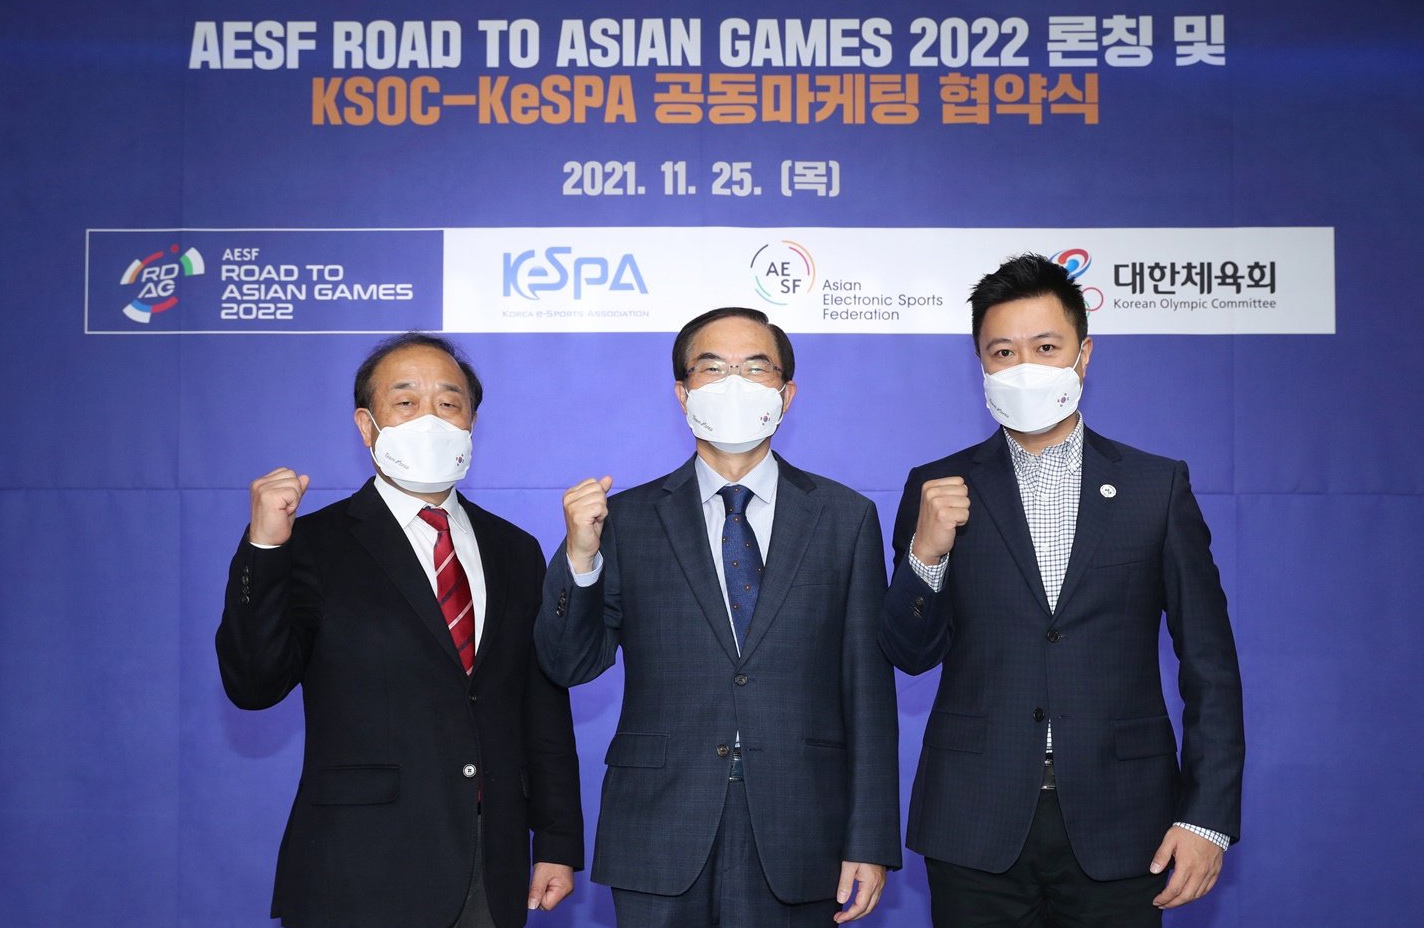 亚洲电子体育官方赛事与活动“亚运征途”发布仪式于韩国首尔举行